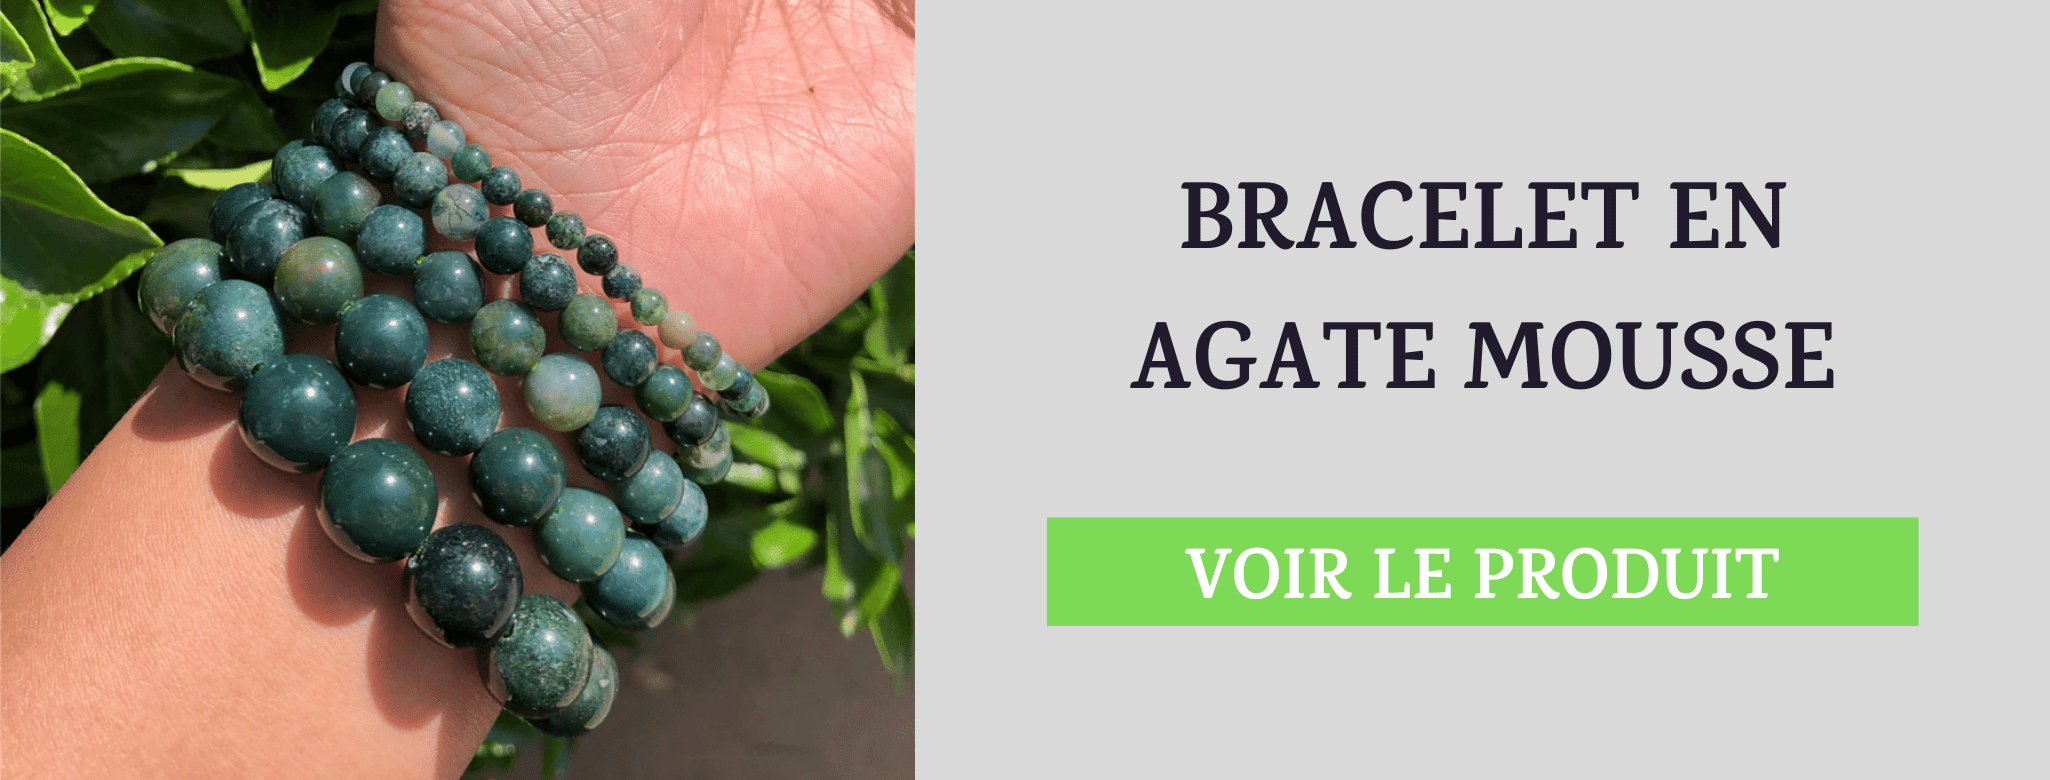 Bracelet Agate Mousse